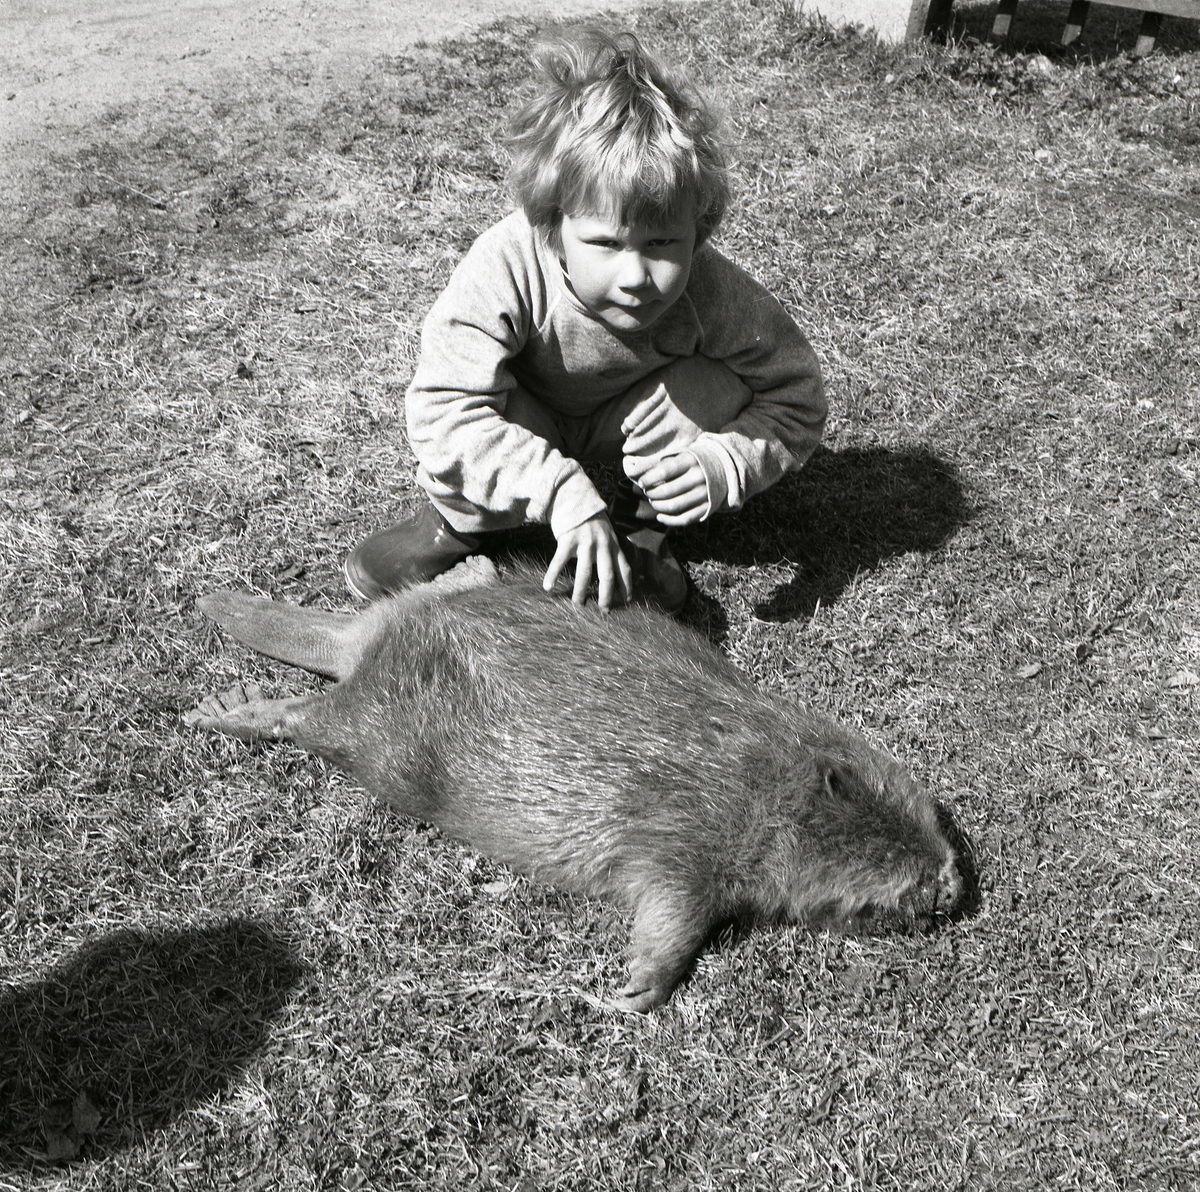 Bildödad bäver ligger i gräset. Bredvid sitter ett barn och känner på dess päls, 1 maj 1986.